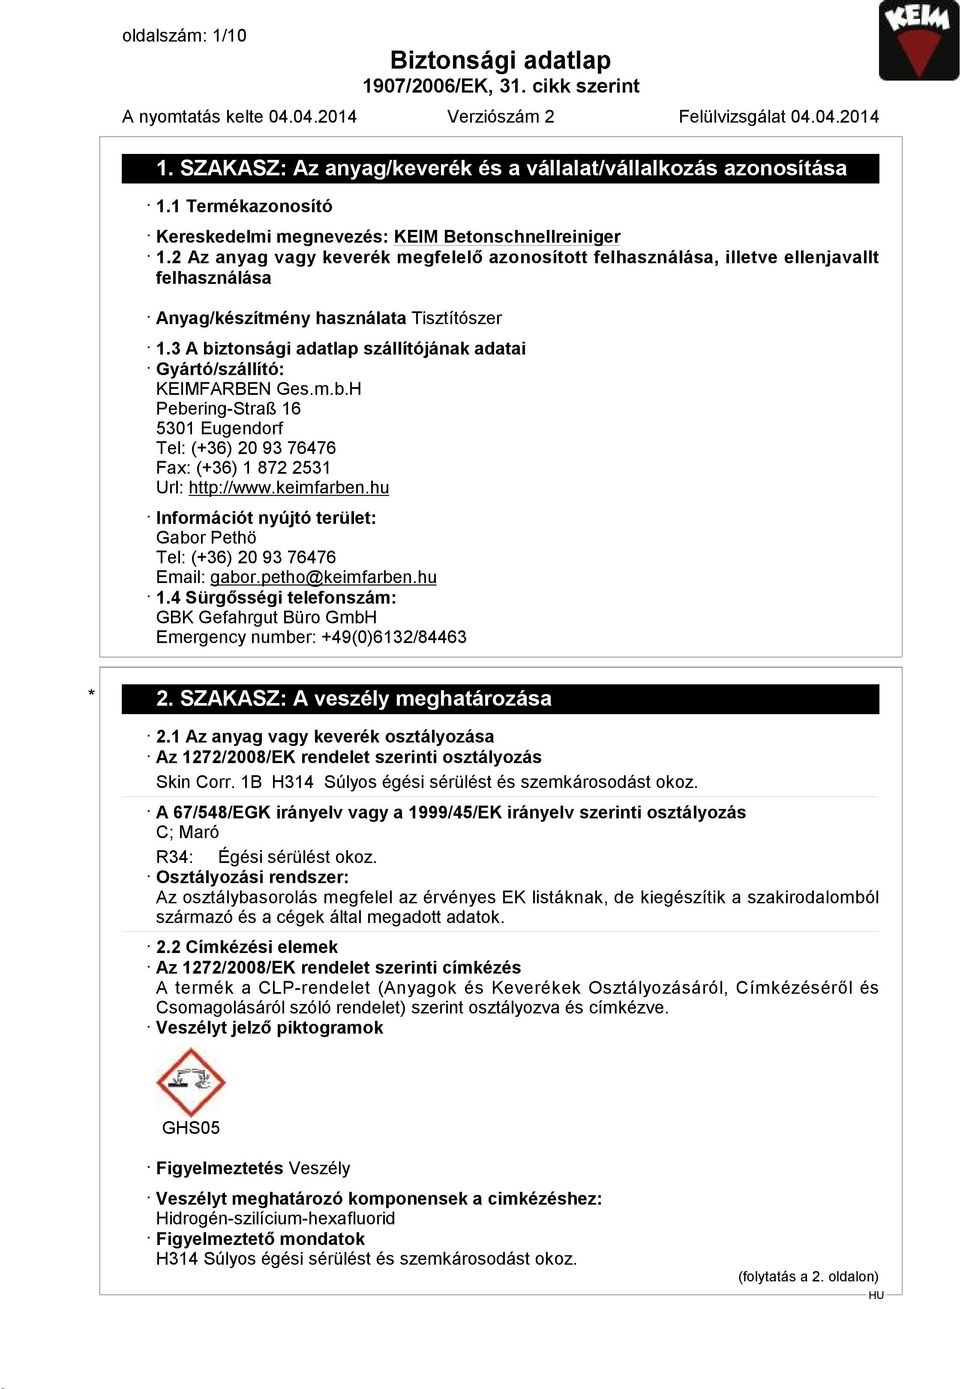 3 A biztonsági adatlap szállítójának adatai Gyártó/szállító: KEIMFARBEN Ges.m.b.H Pebering-Straß 16 5301 Eugendorf Tel: (+36) 20 93 76476 Fax: (+36) 1 872 2531 Url: http://www.keimfarben.